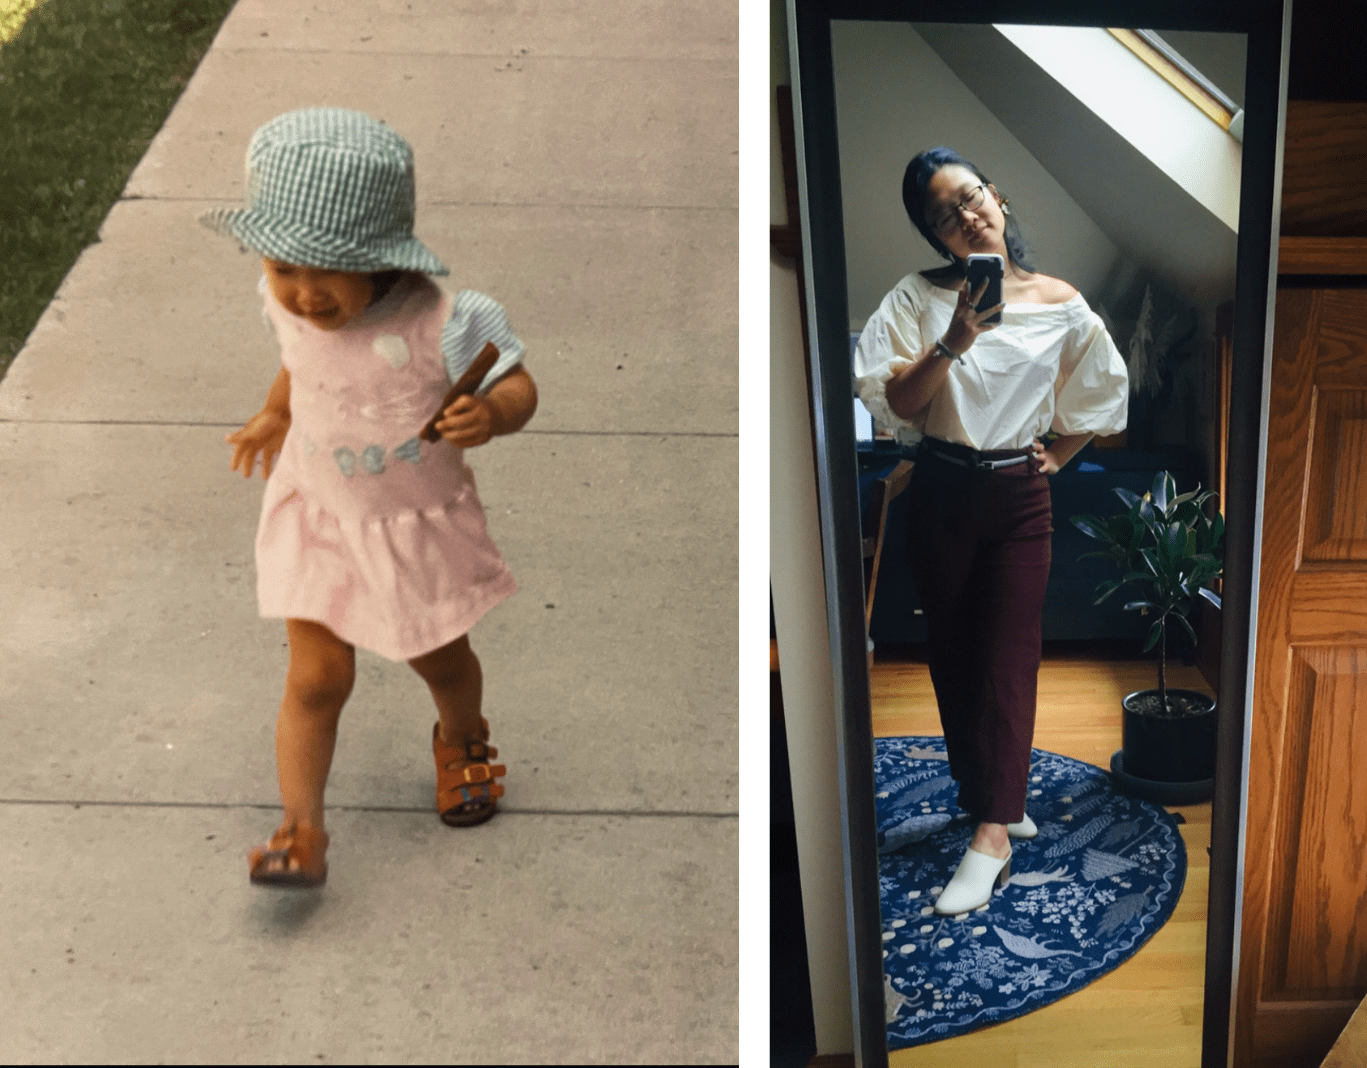 من 5 مورد از لباس های مورد علاقه دوران کودکی خود را بازسازی کردم.  این چیزی است که من به آن رسیدم ...